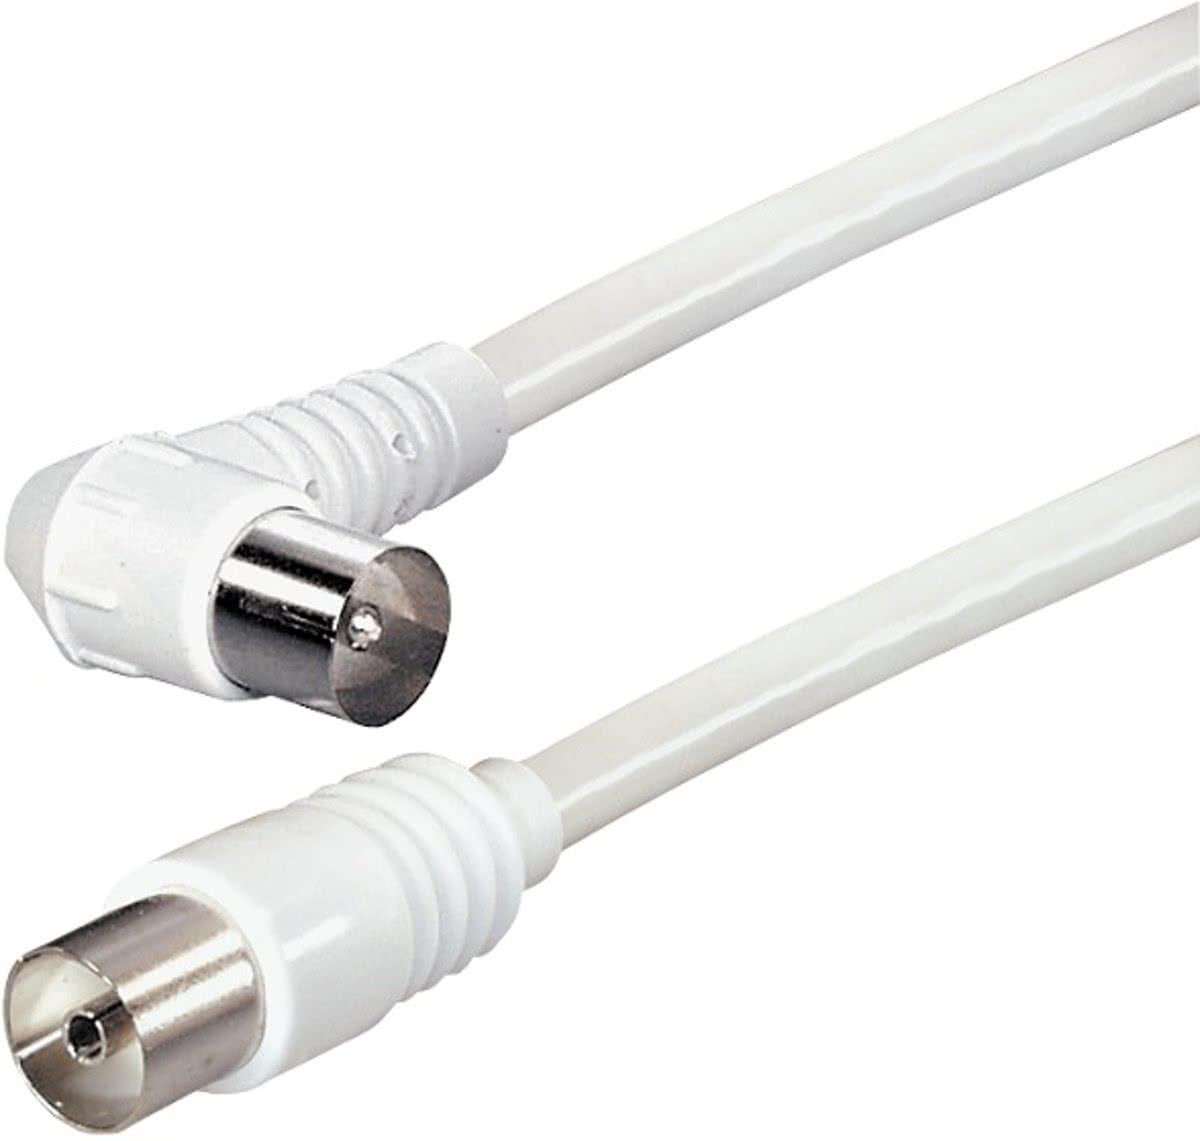 PremiumConnect eenvoudige witte coaxkabel met haaks-recht connectoren - 2,5 meter